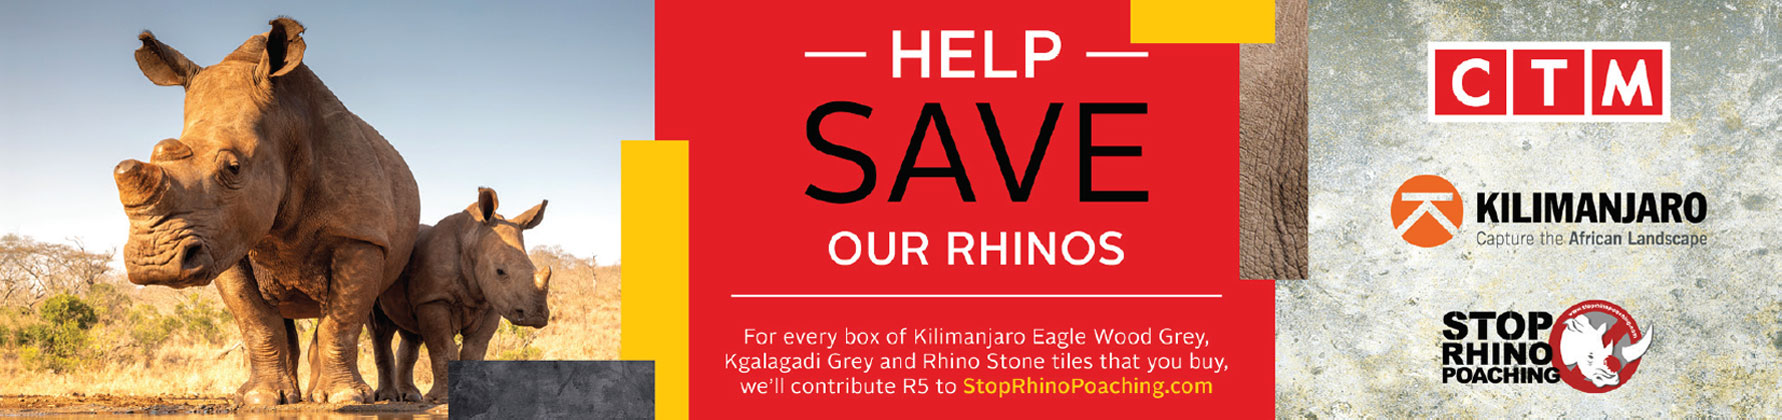 Kilimanjaro-Rhino-Charity-Banner